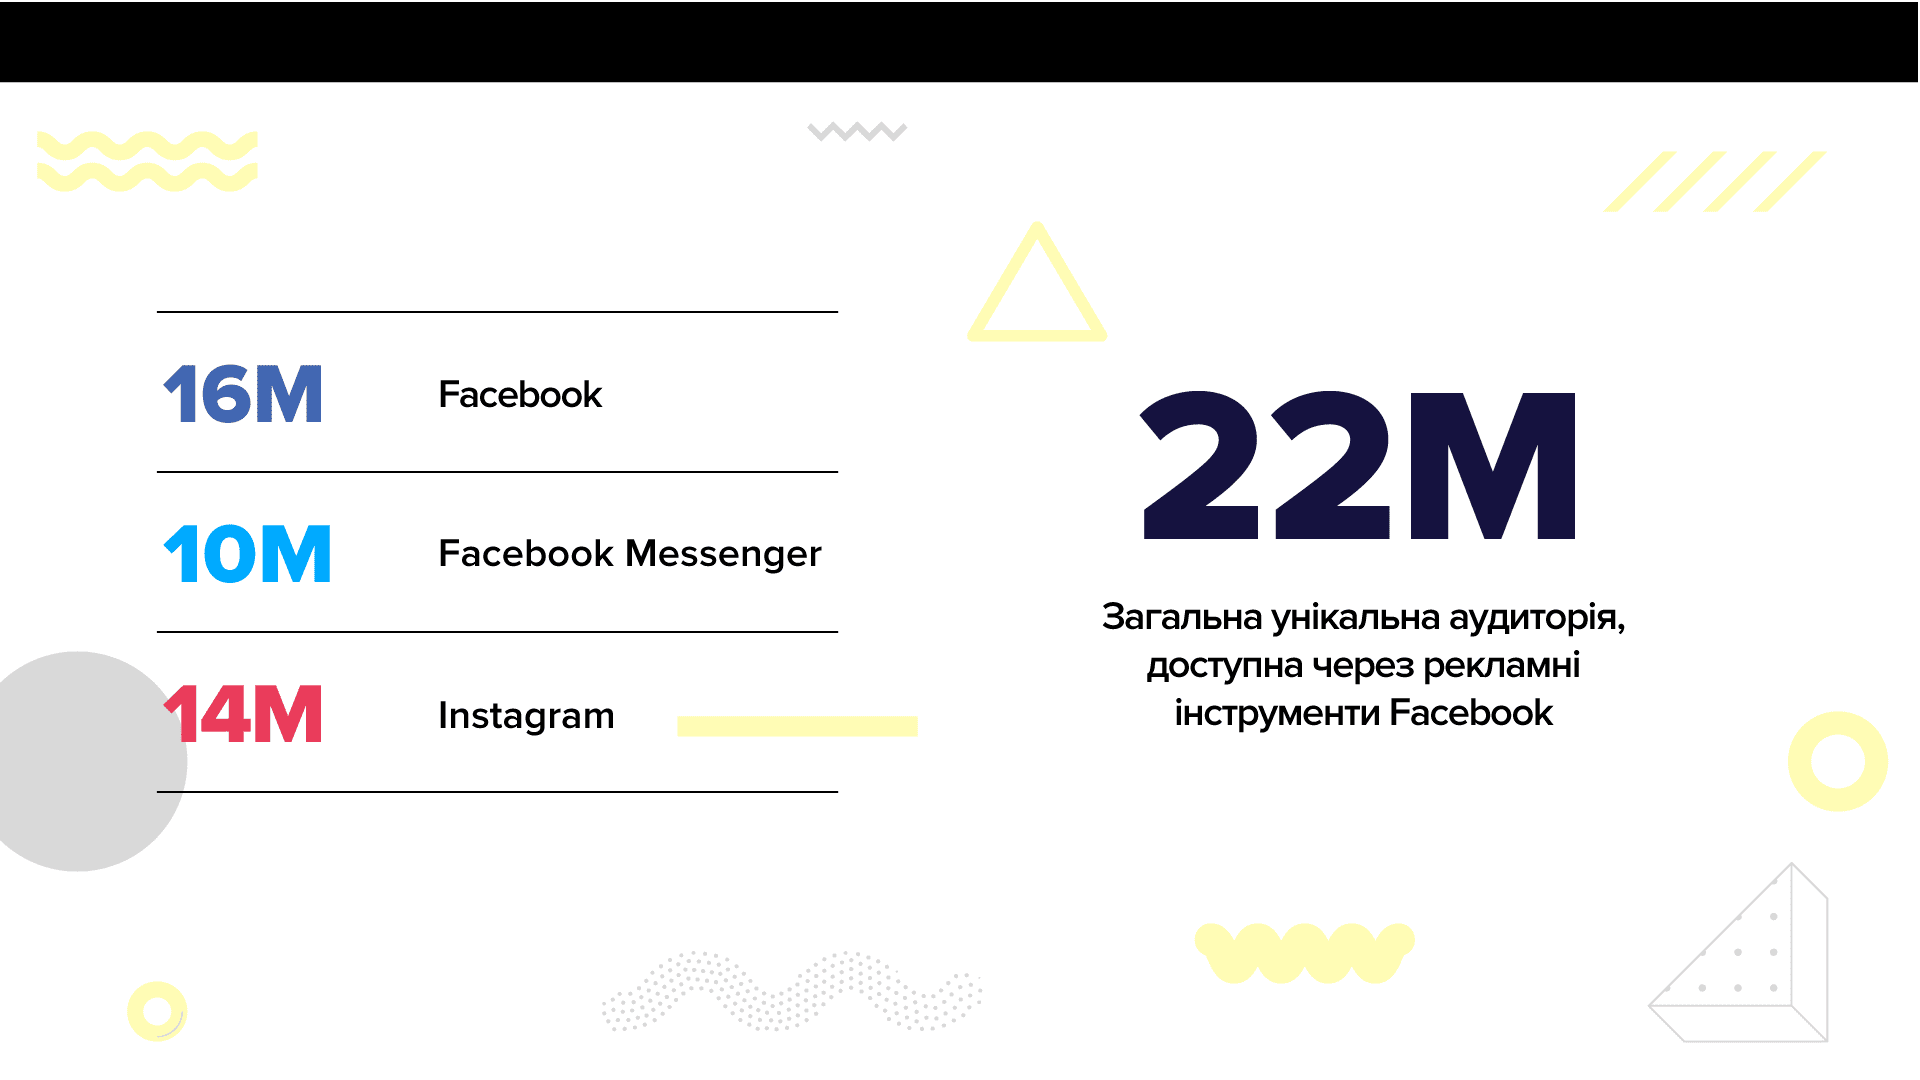 Аудиторія Facebook пішла на спад у шести обласних центрах України: дослідження plusone